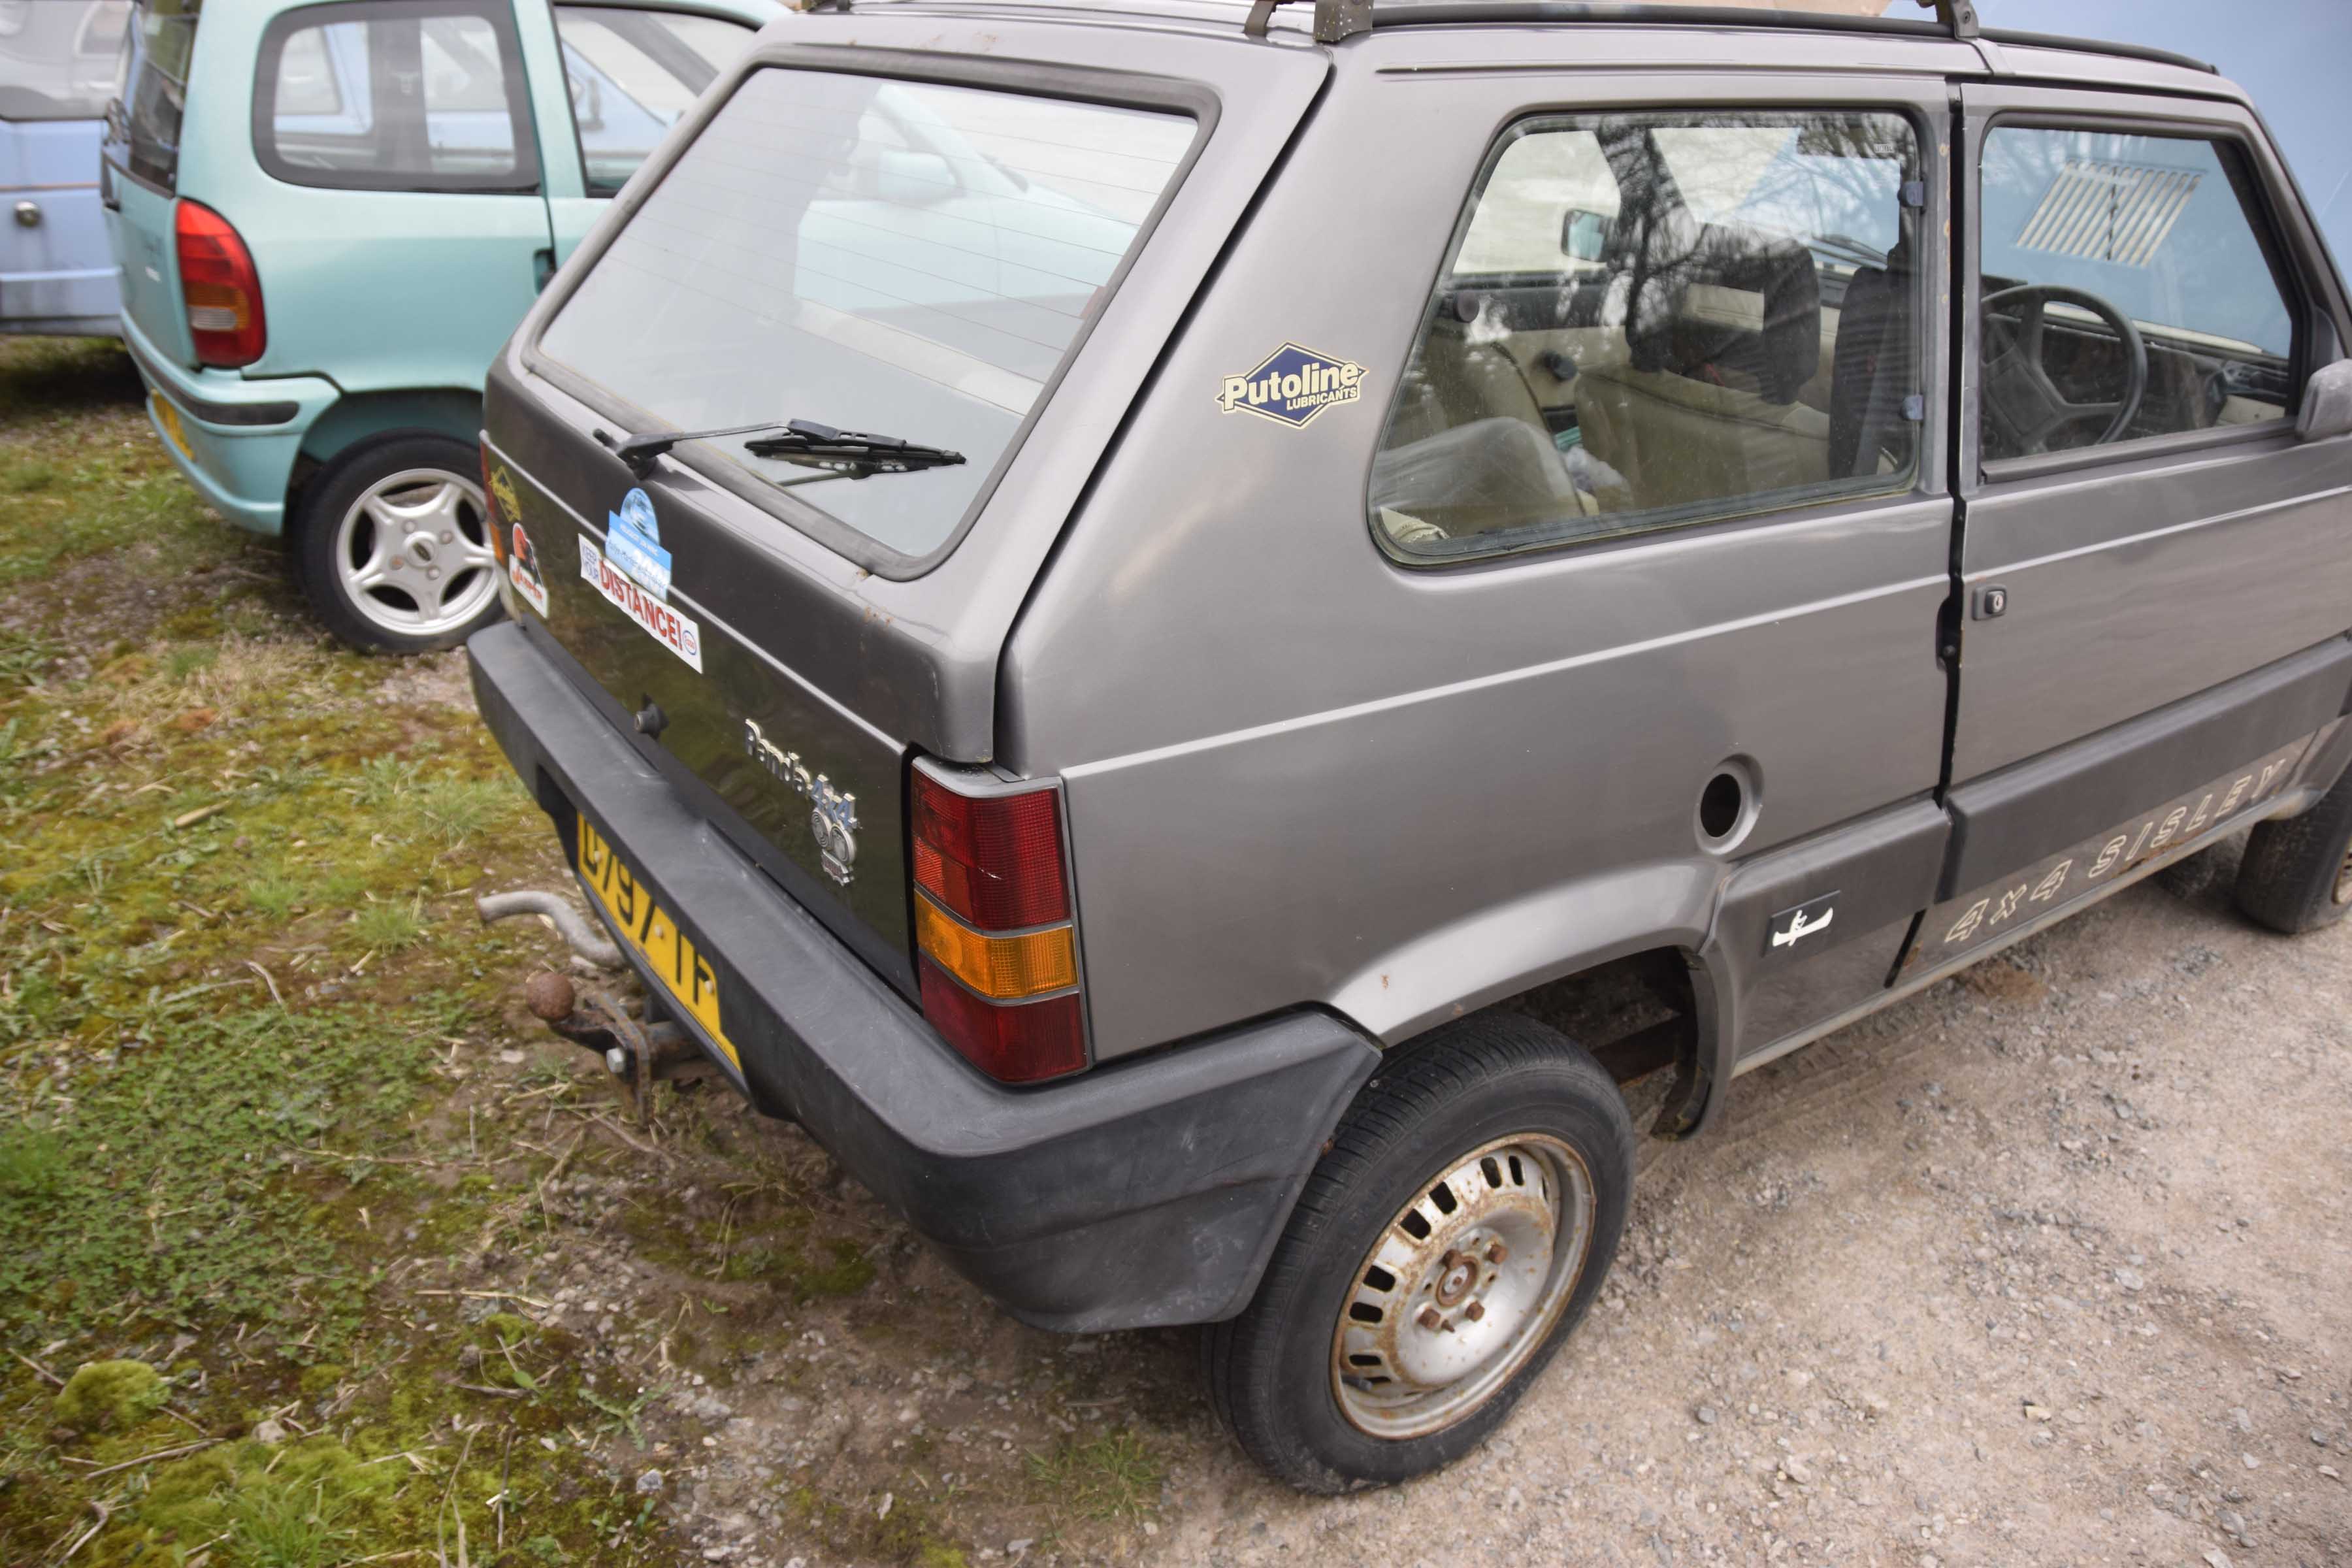 Fiat Panda 4x4 registration D797 TFM, plus pallet of spares. - Image 8 of 8